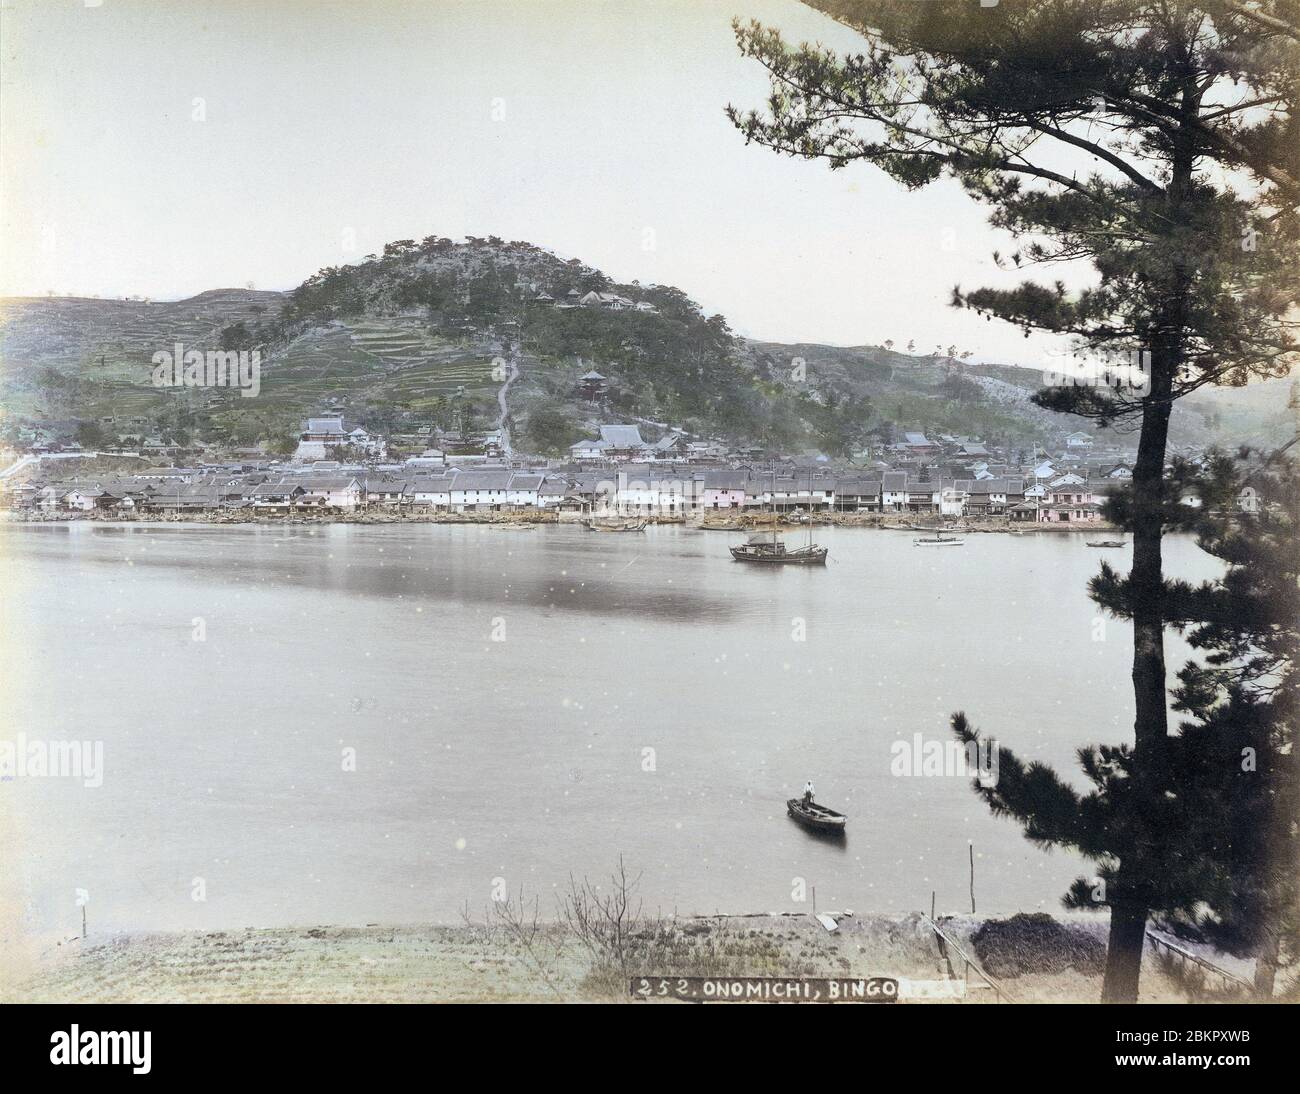 [ 1890er Jahre Japan - Blick auf Onomichi ] - Panoramablick auf Onomichi und das Seto Binnenmeer in der Präfektur Hiroshima. Die Stadt war ein wichtiger Hafen für den Transport von Gütern. Vintage Albumin-Fotografie aus dem 19. Jahrhundert. Stockfoto